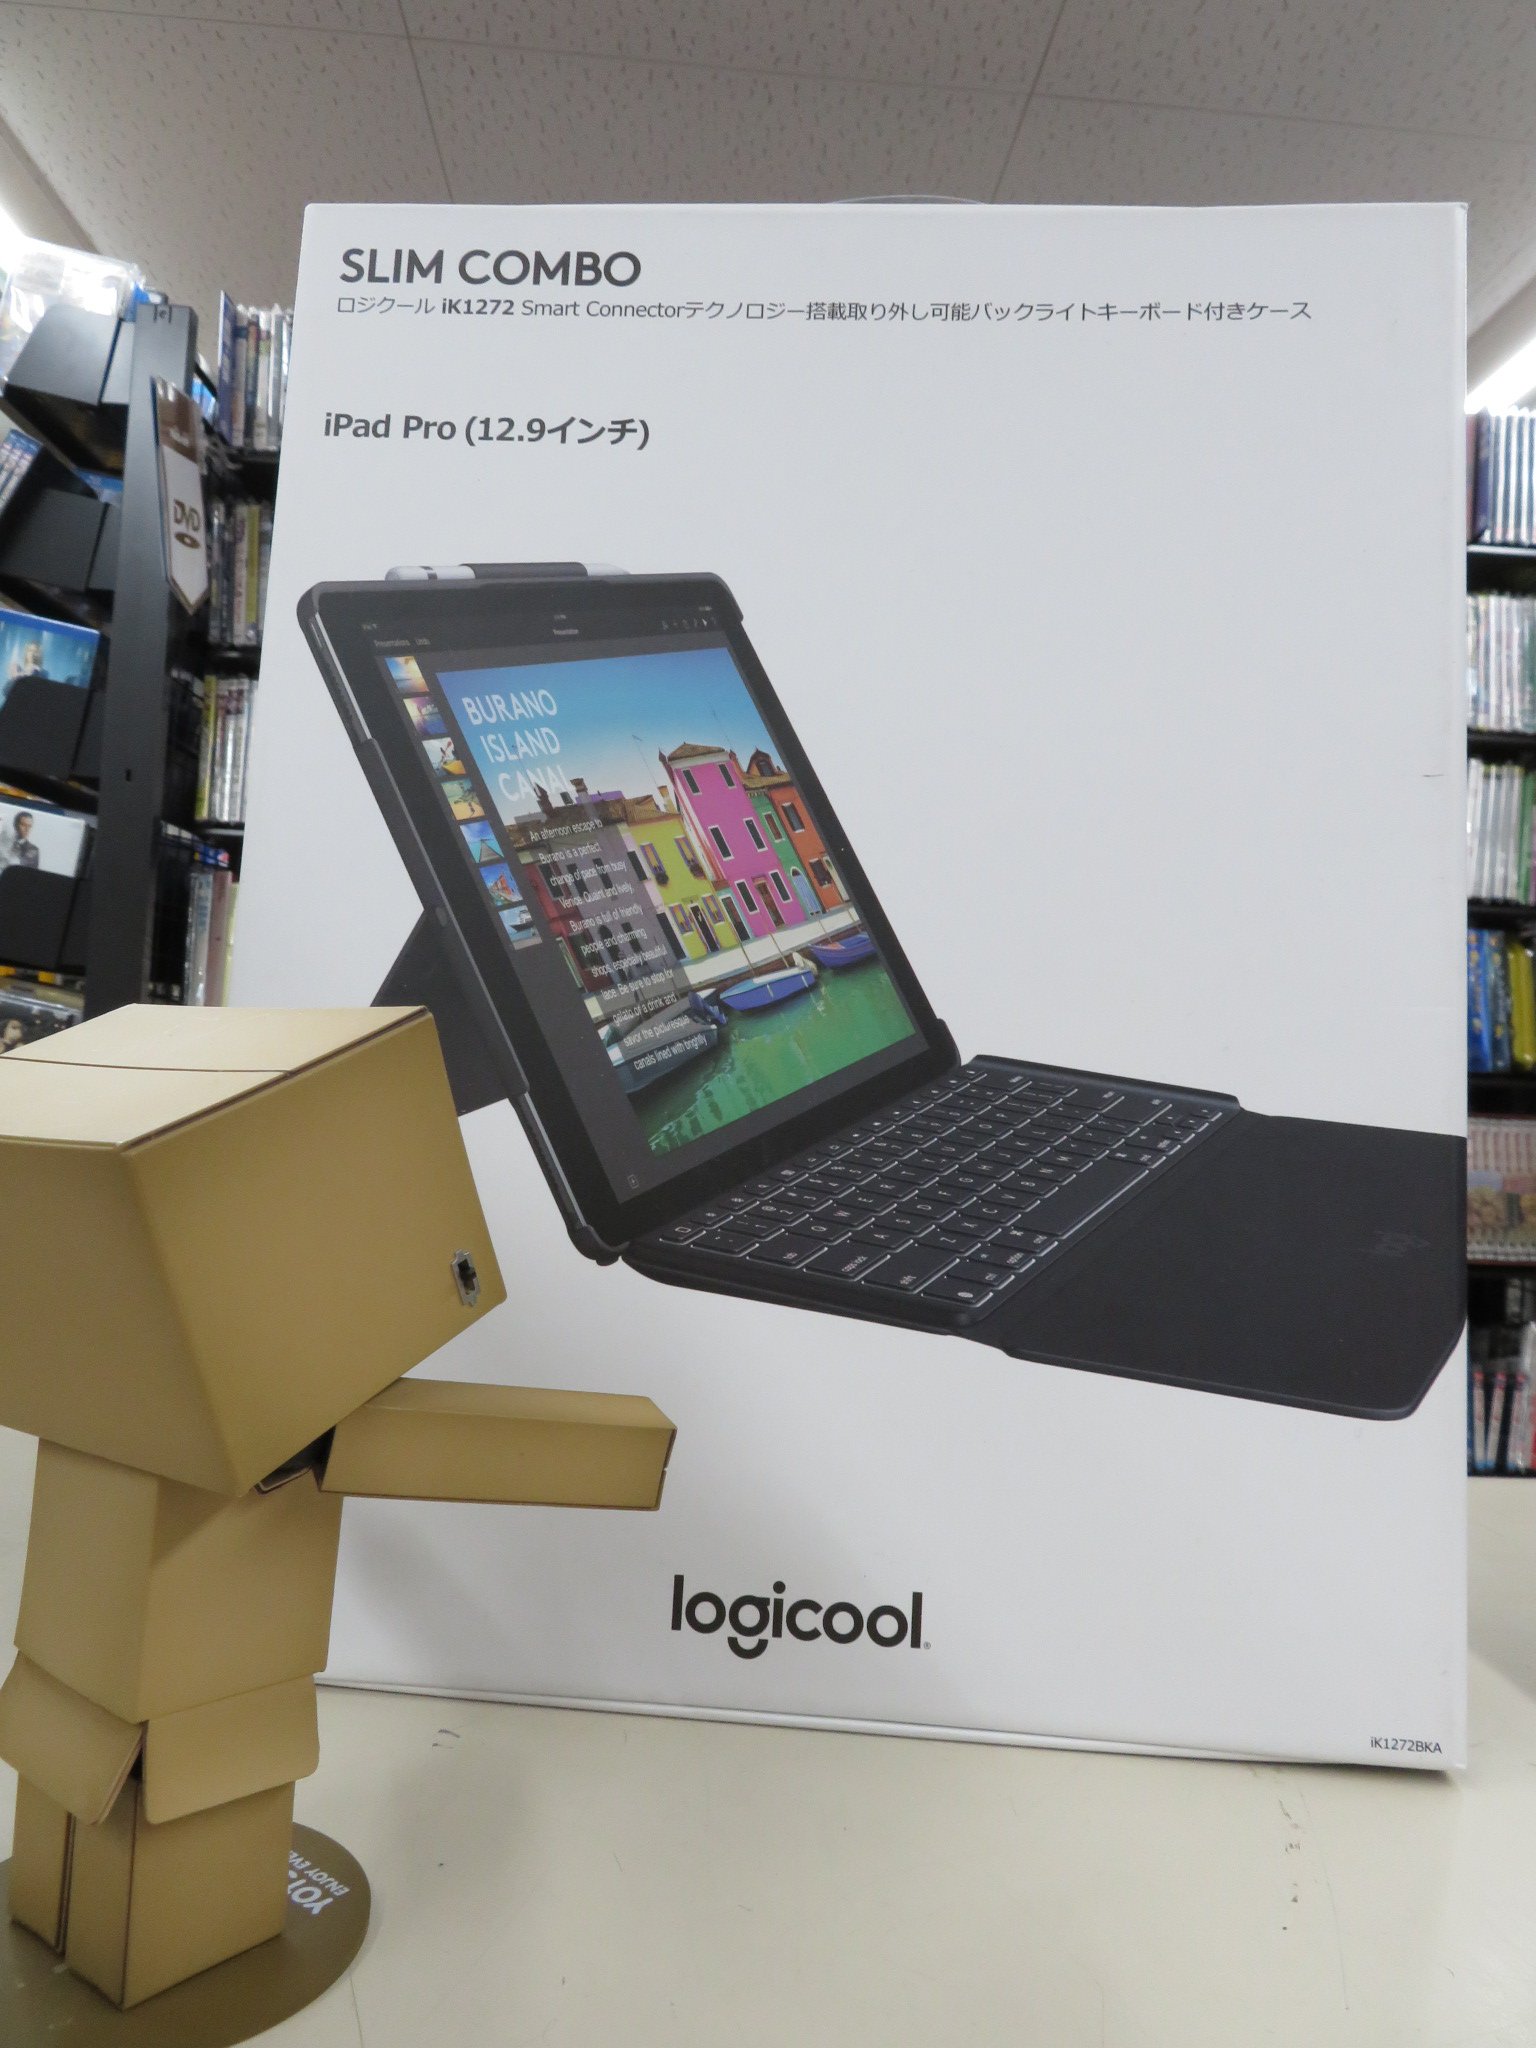 ハードオフ横浜金沢富岡店【公式】 on Twitter: "#Logicool の #iPadPro (12.9型)用のキーボード付ケースが